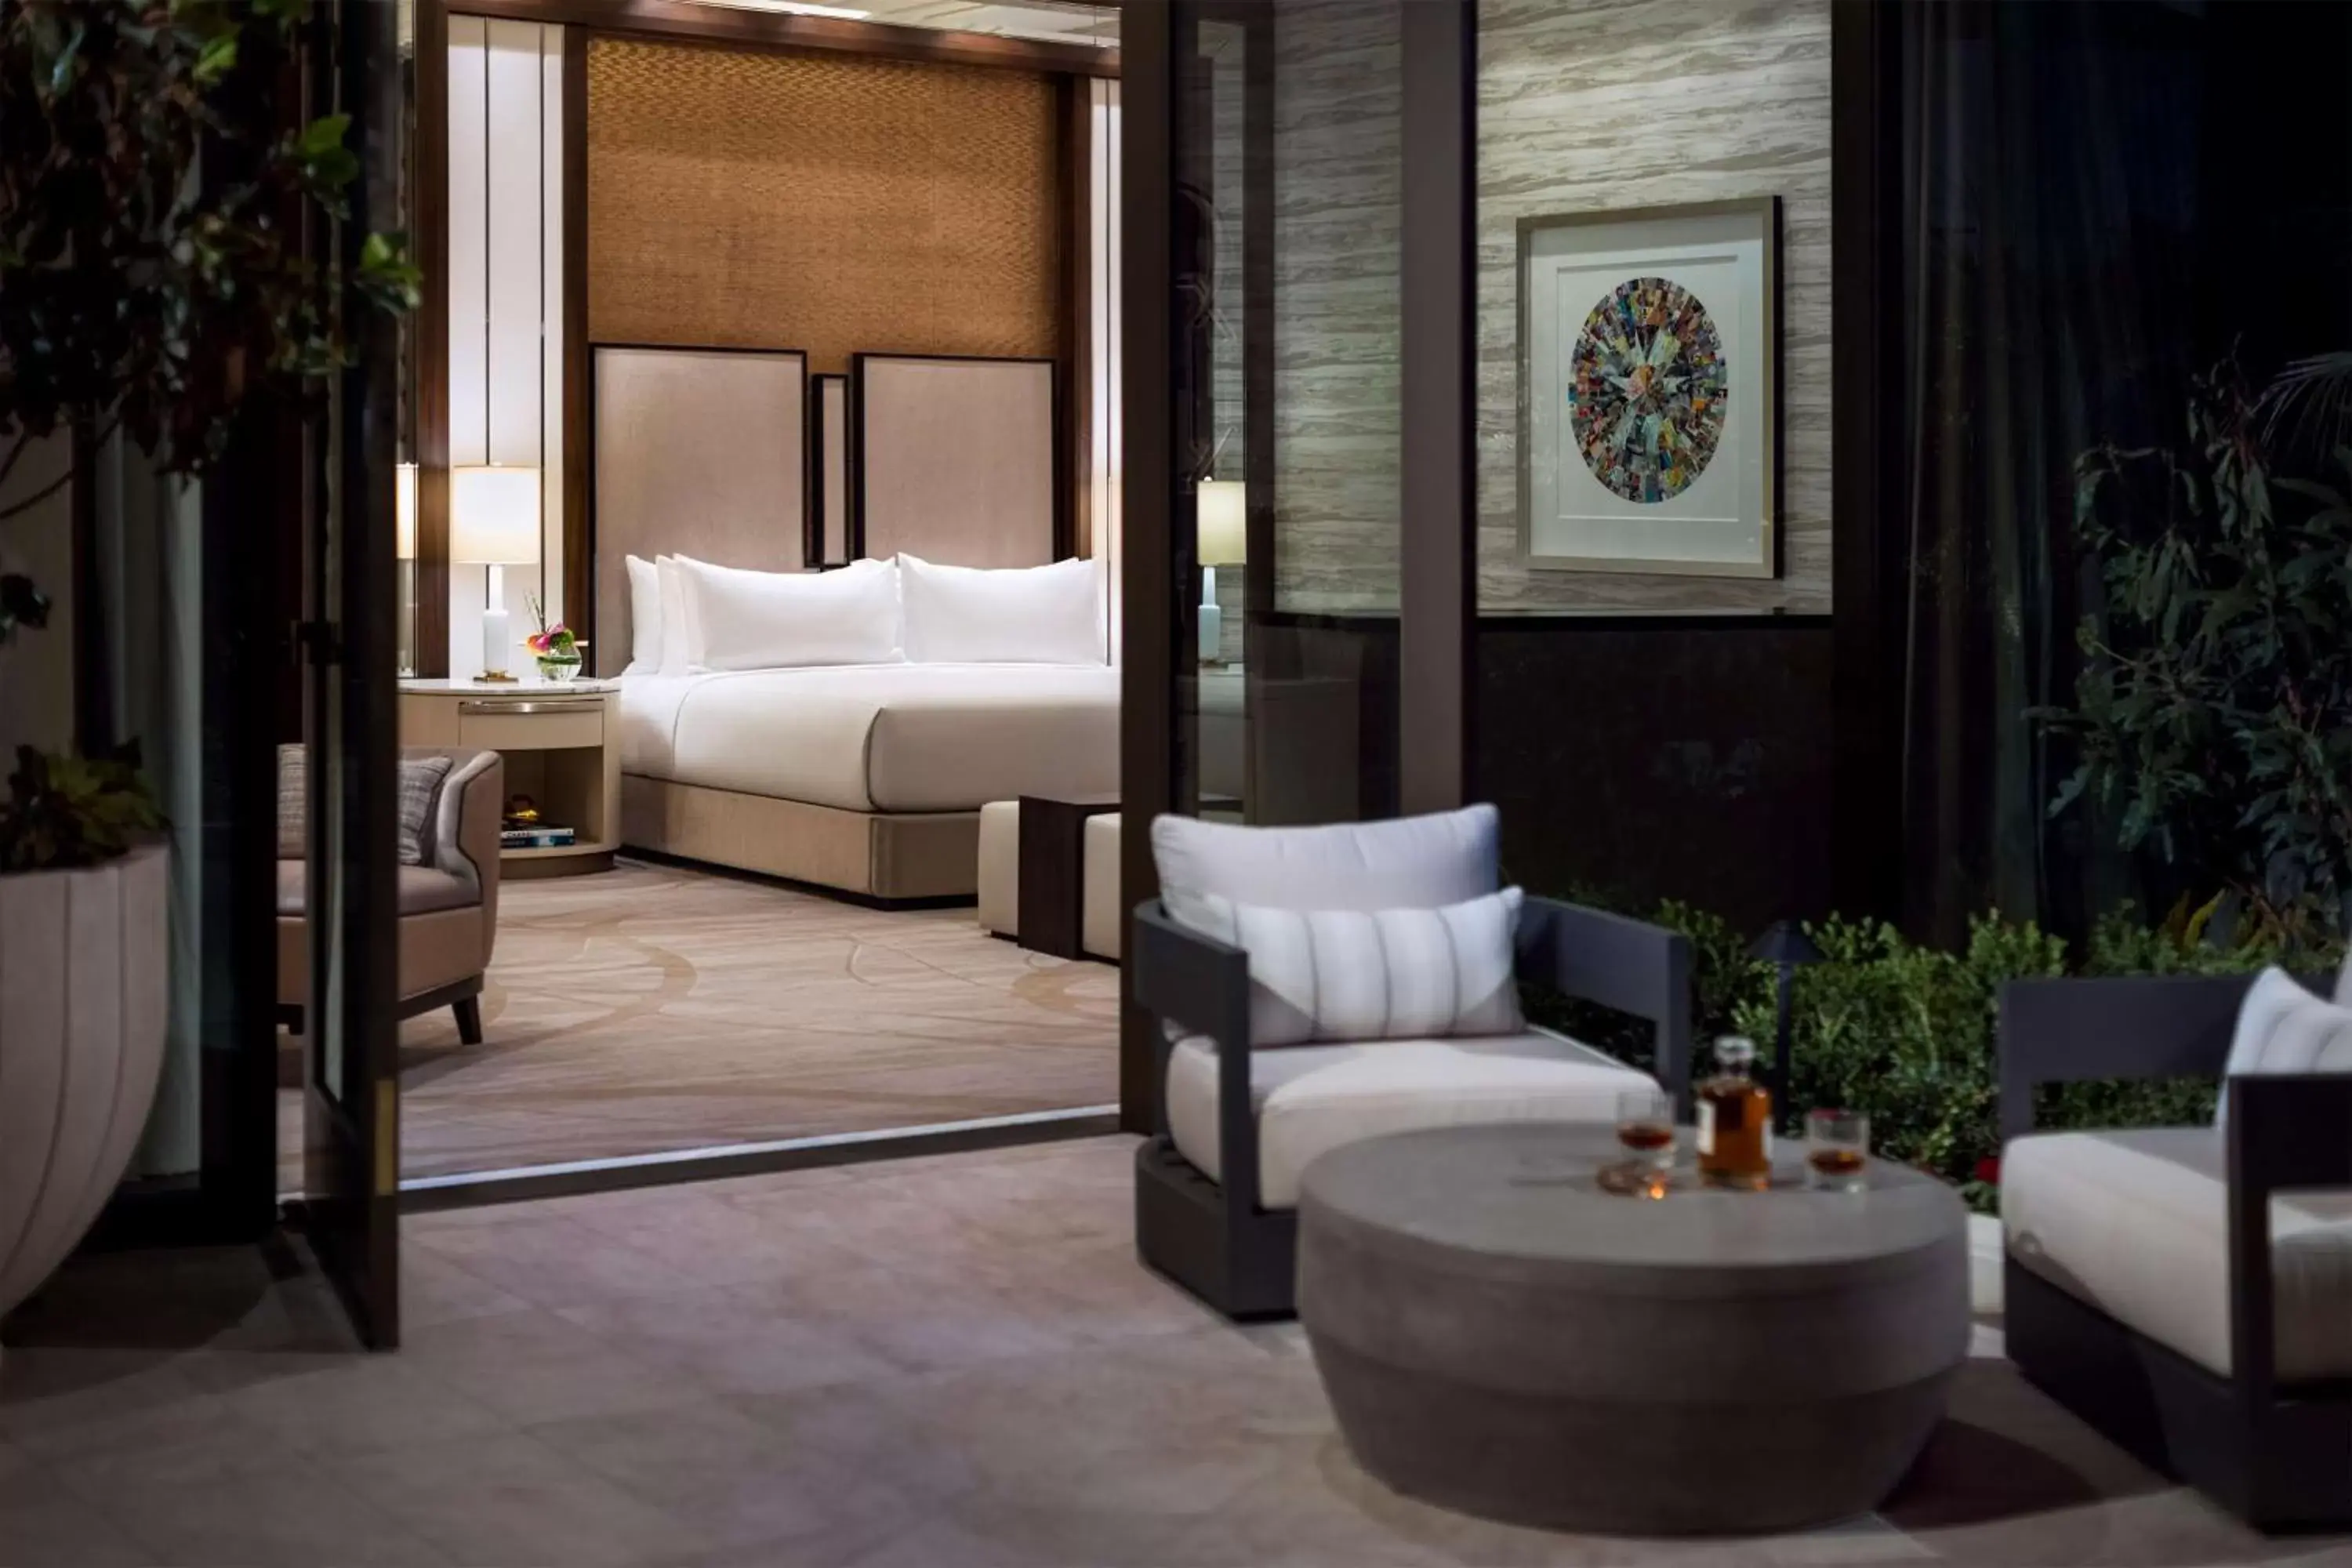 Living room in Crockfords Las Vegas, LXR Hotels & Resorts at Resorts World